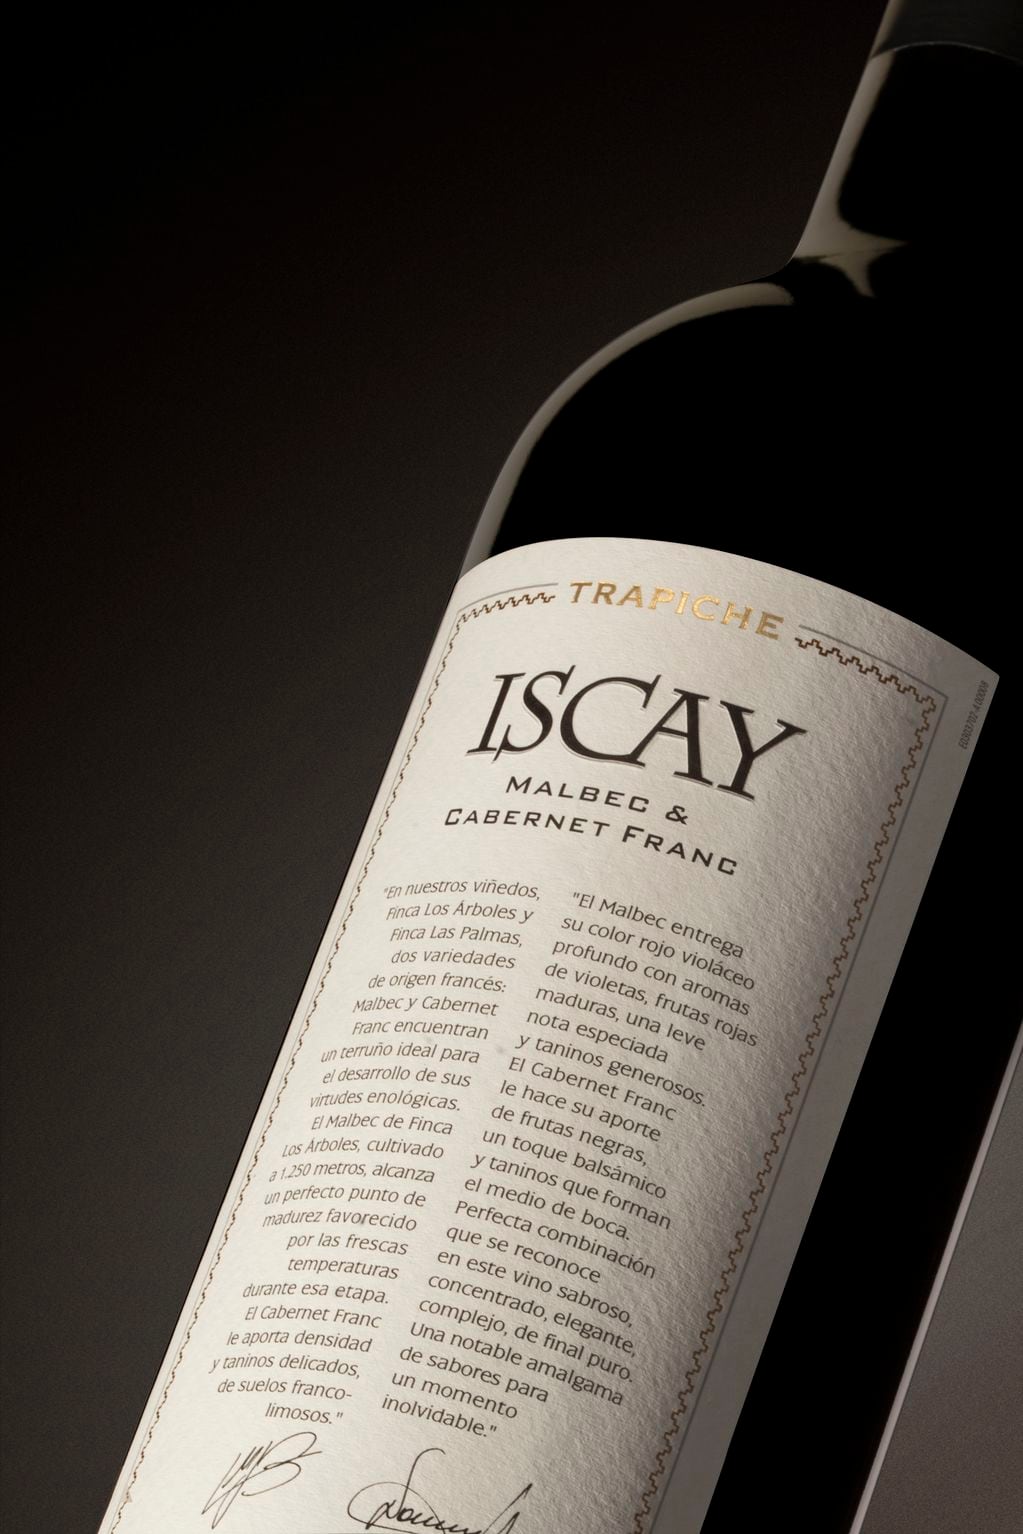 Iscay se consagró como uno de los mejores del país en el Concurso Nacional de Vinos Guarda14. - Gentileza